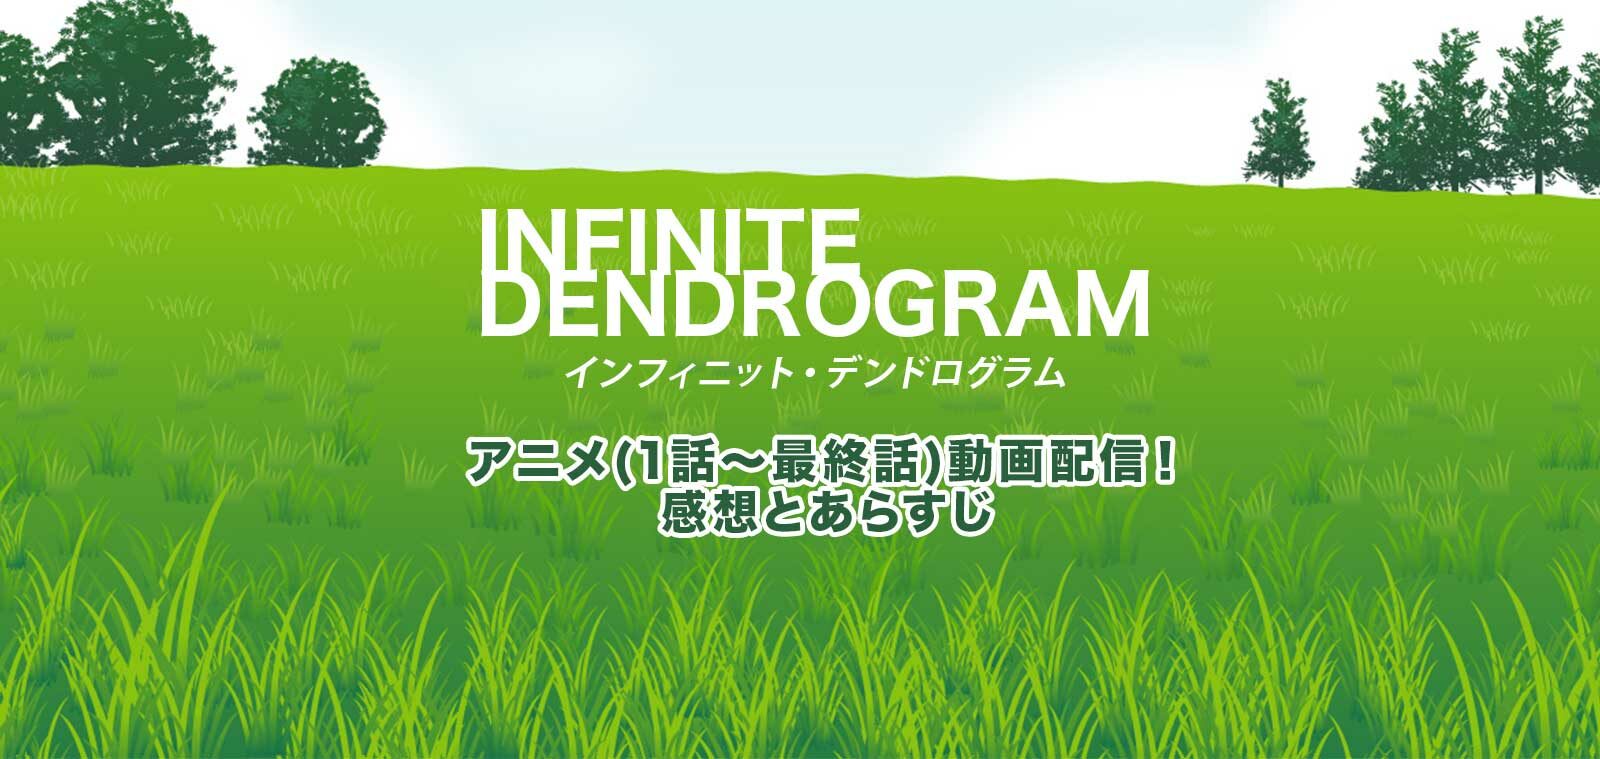 infinitedendrogram-anime-2393603